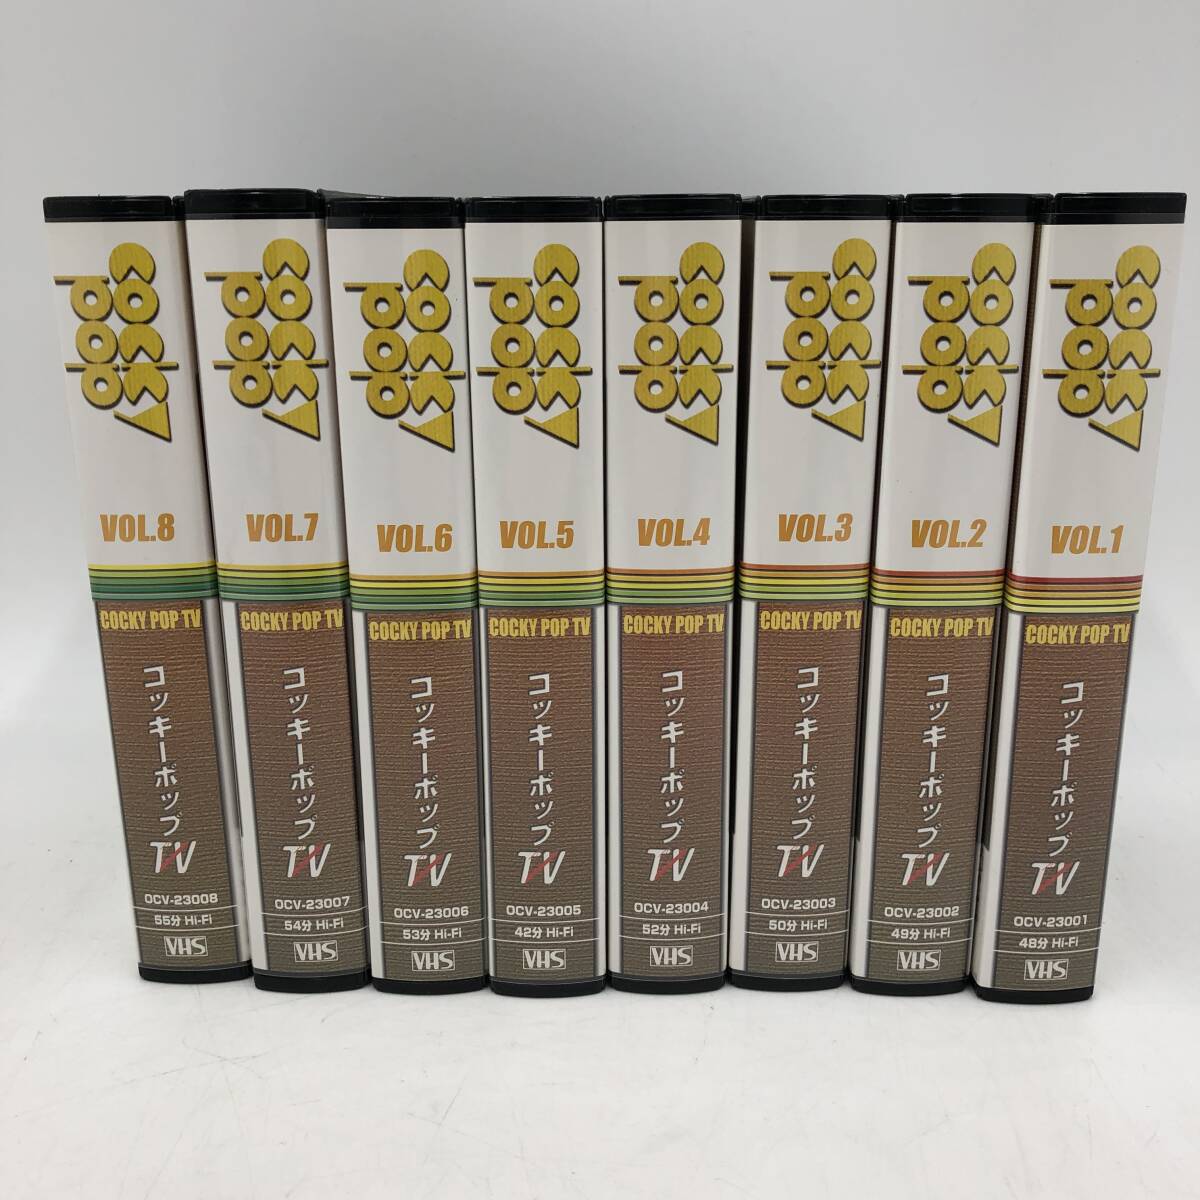 YAMAHA/ヤマハ COCKY POP TV (コッキーポップ TV) 全8巻 VHS 【視聴未確認】_画像2